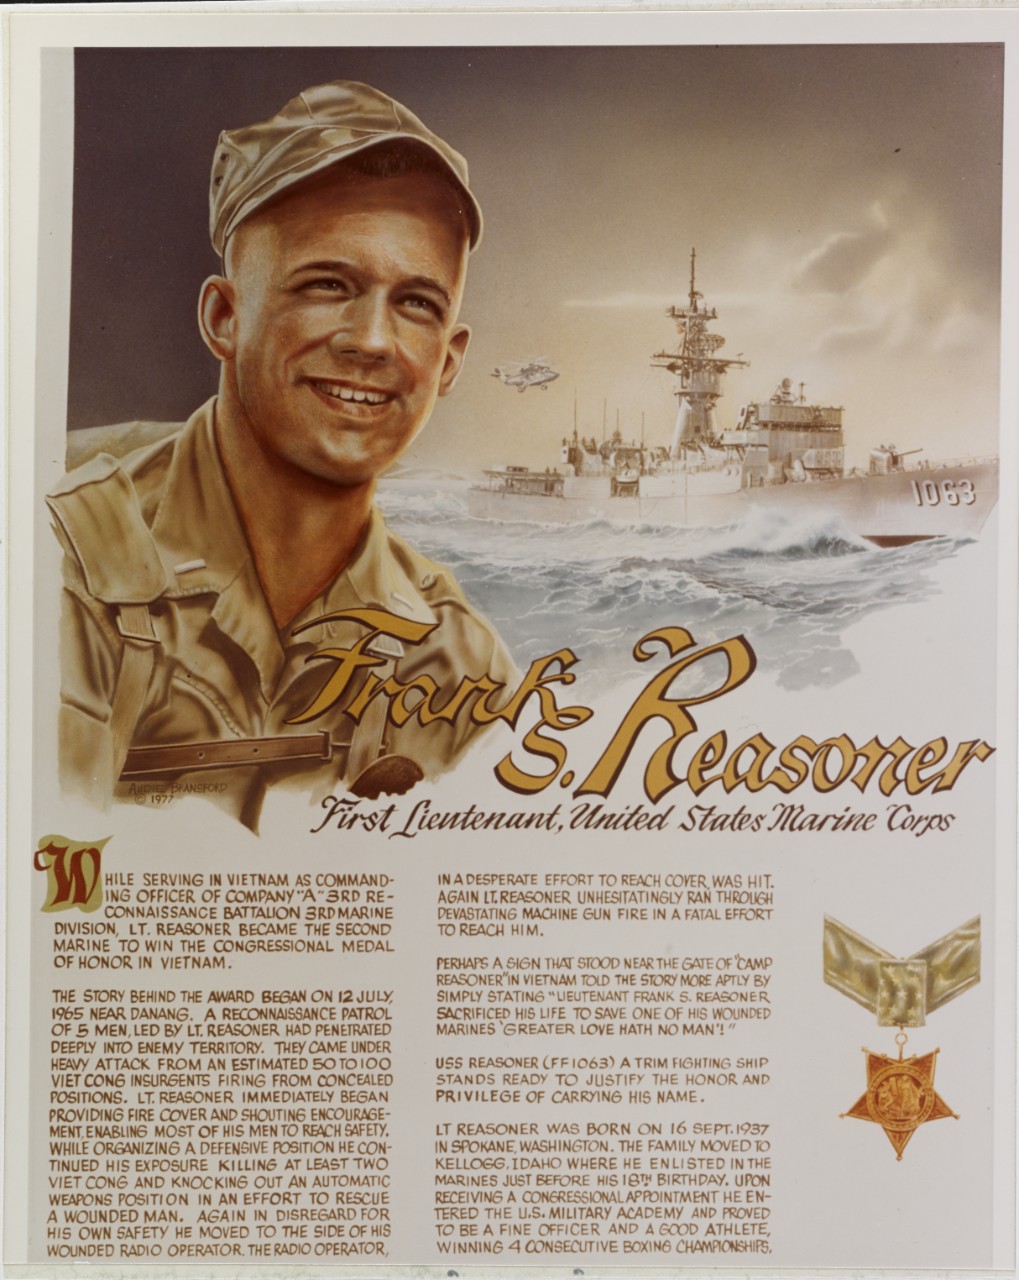 First Lieutenant Frank S. Reasoner, USMC